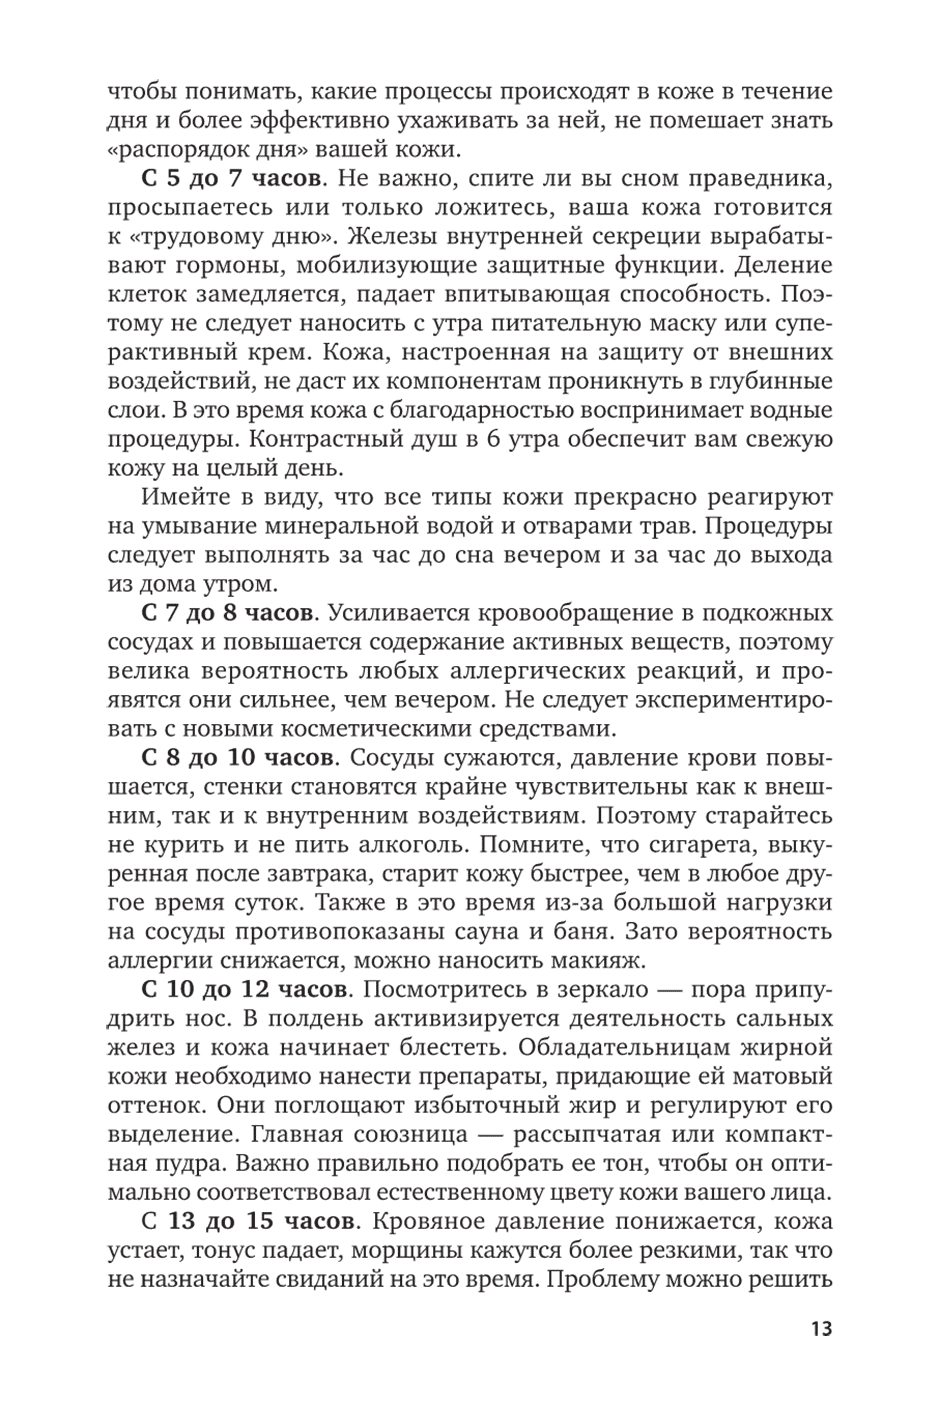 Пример страницы из книги "Основы косметологии. Макияж" - Остроумова Е. Б.